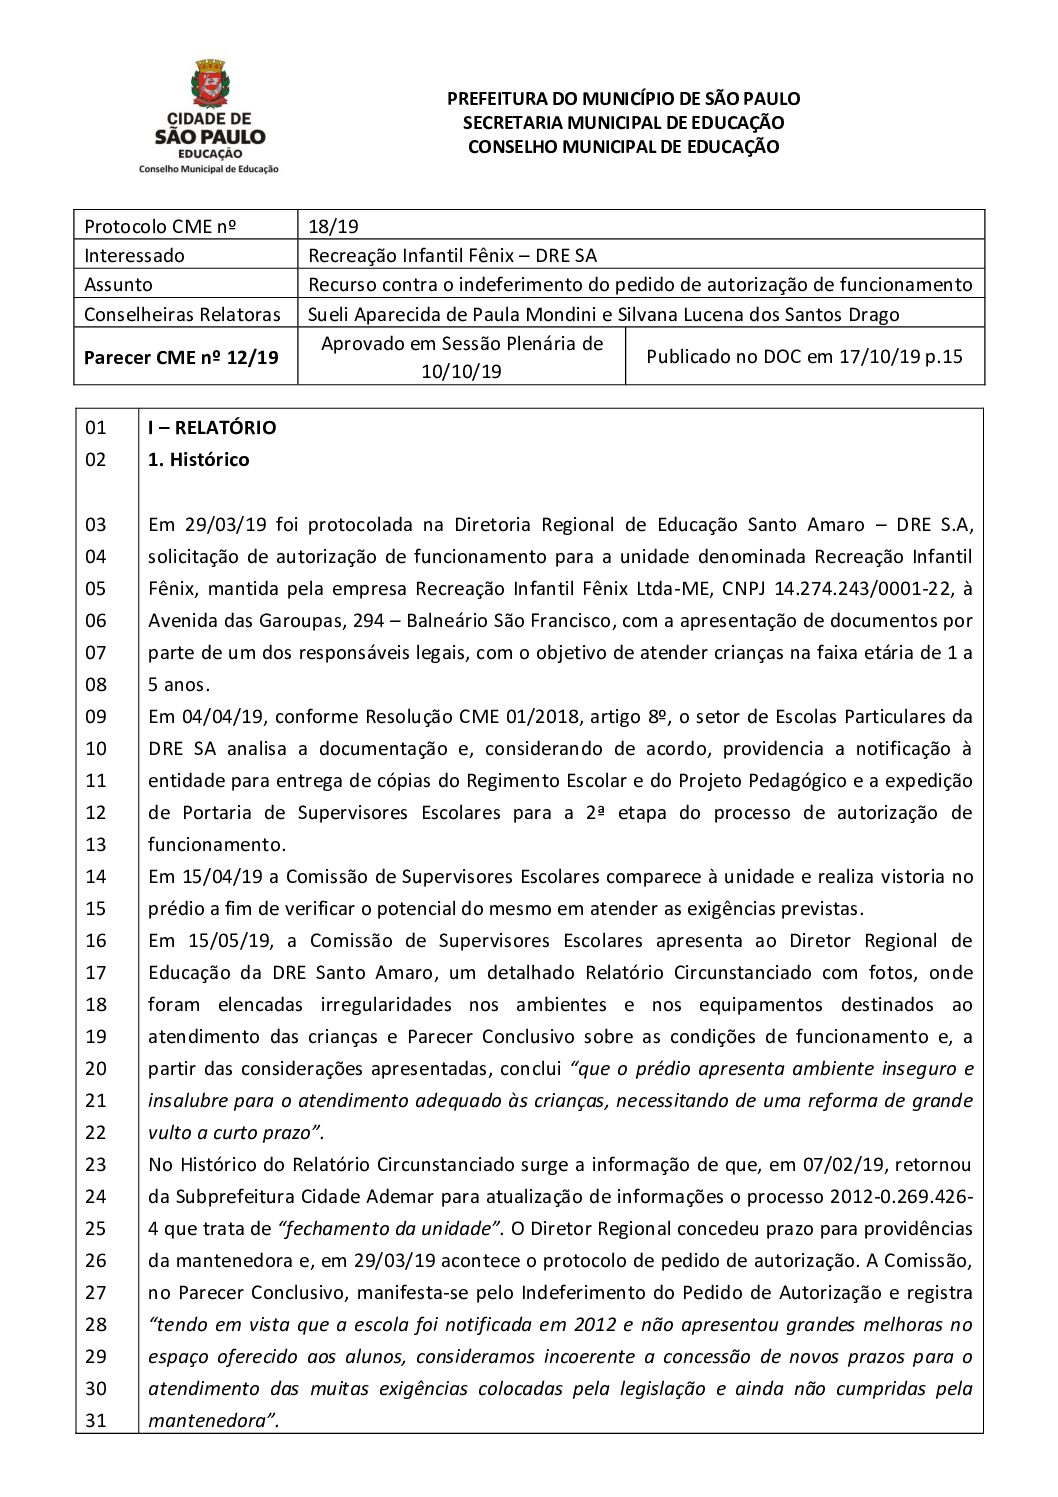 Parecer CME nº 12/2019 - Recreação Infantil Fênix (DRE Santo Amaro) - Recurso contra o indeferimento do pedido de autorização de funcionamento 